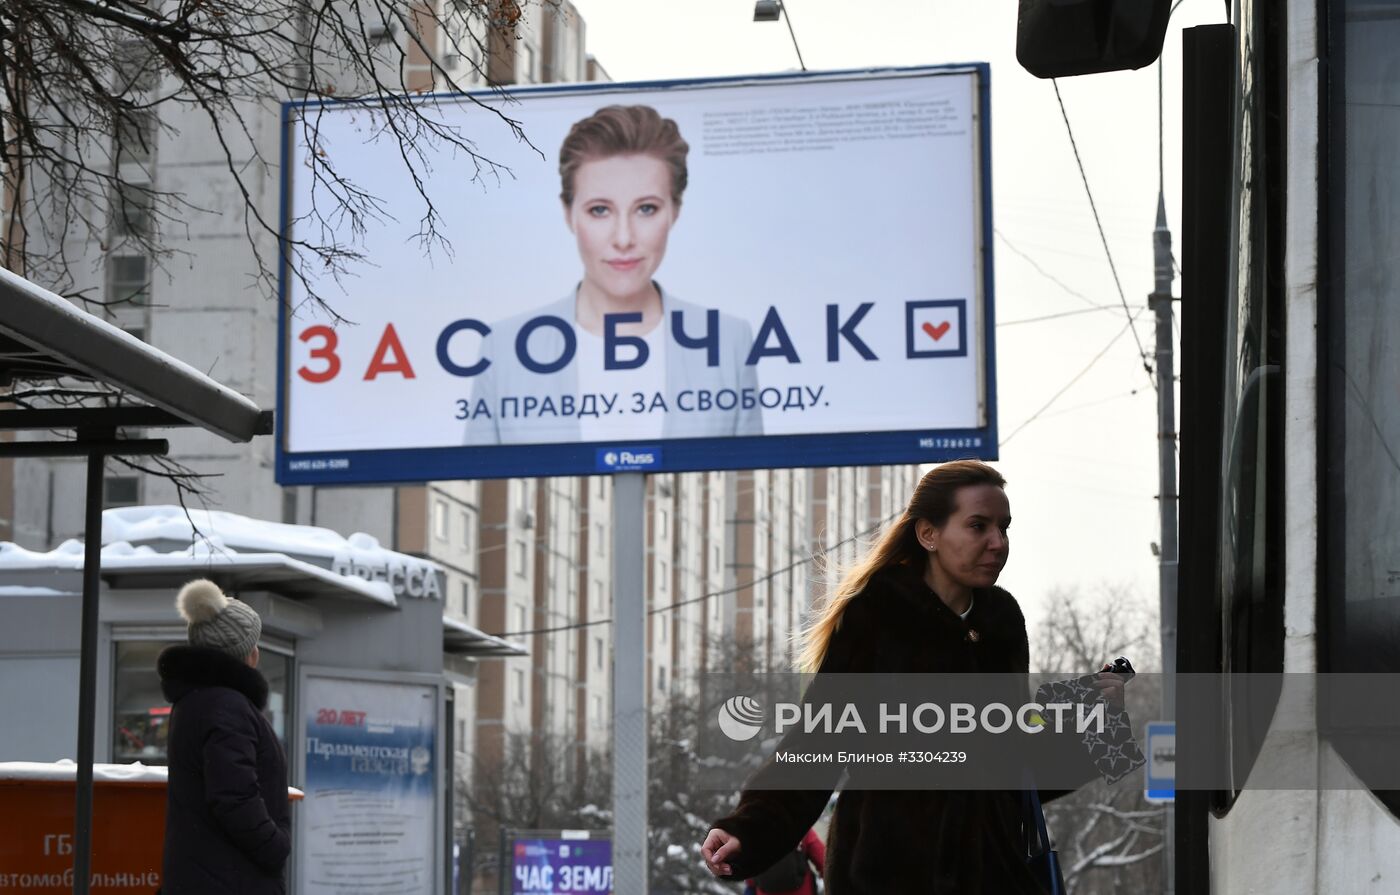 Предвыборные баннеры в поддержку кандидата на пост президента РФ К. Собчак